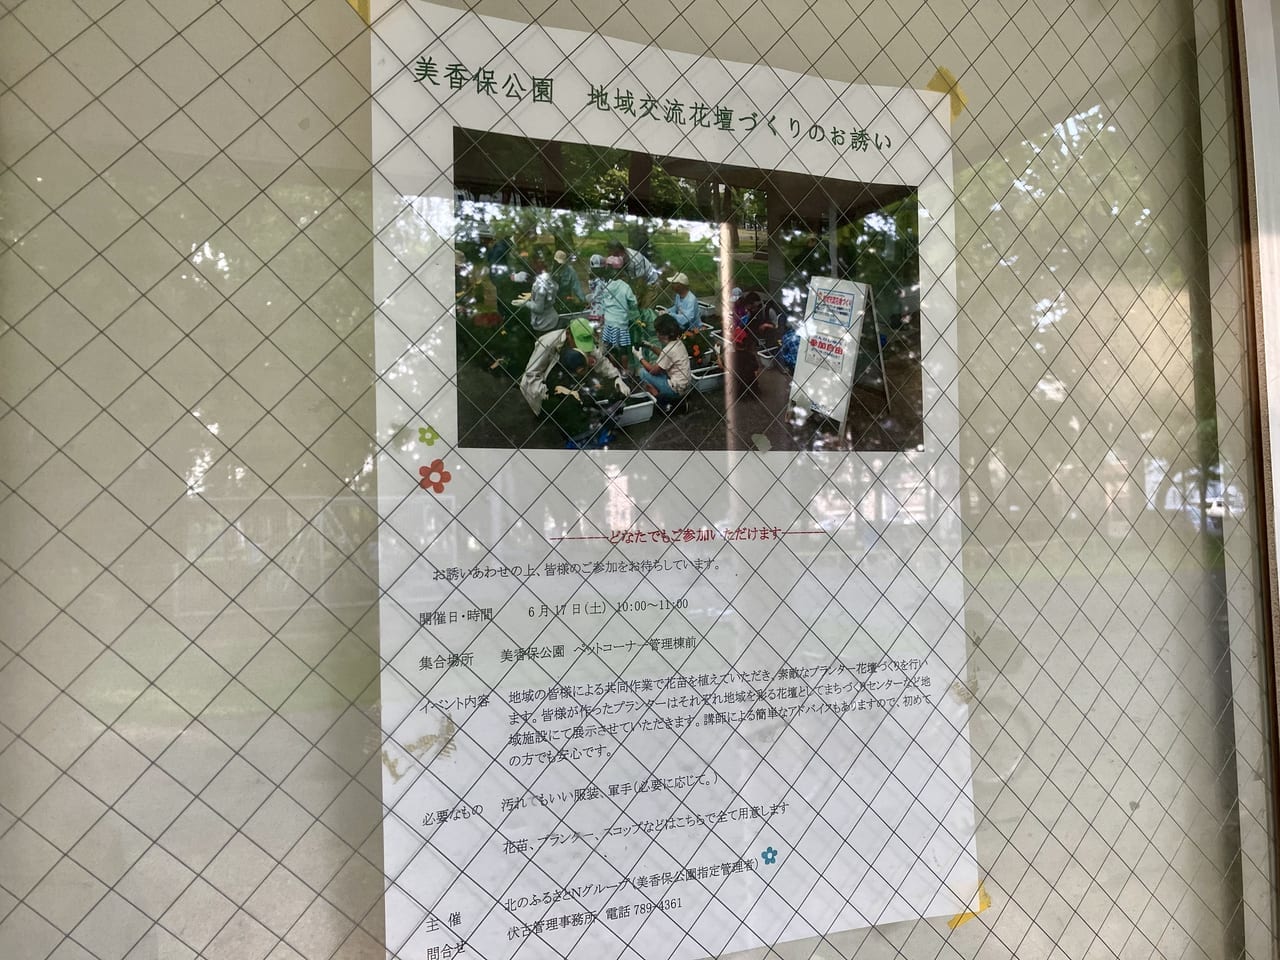 6月17日「美香保公園」にて地域交流花壇づくりが開催されますよ